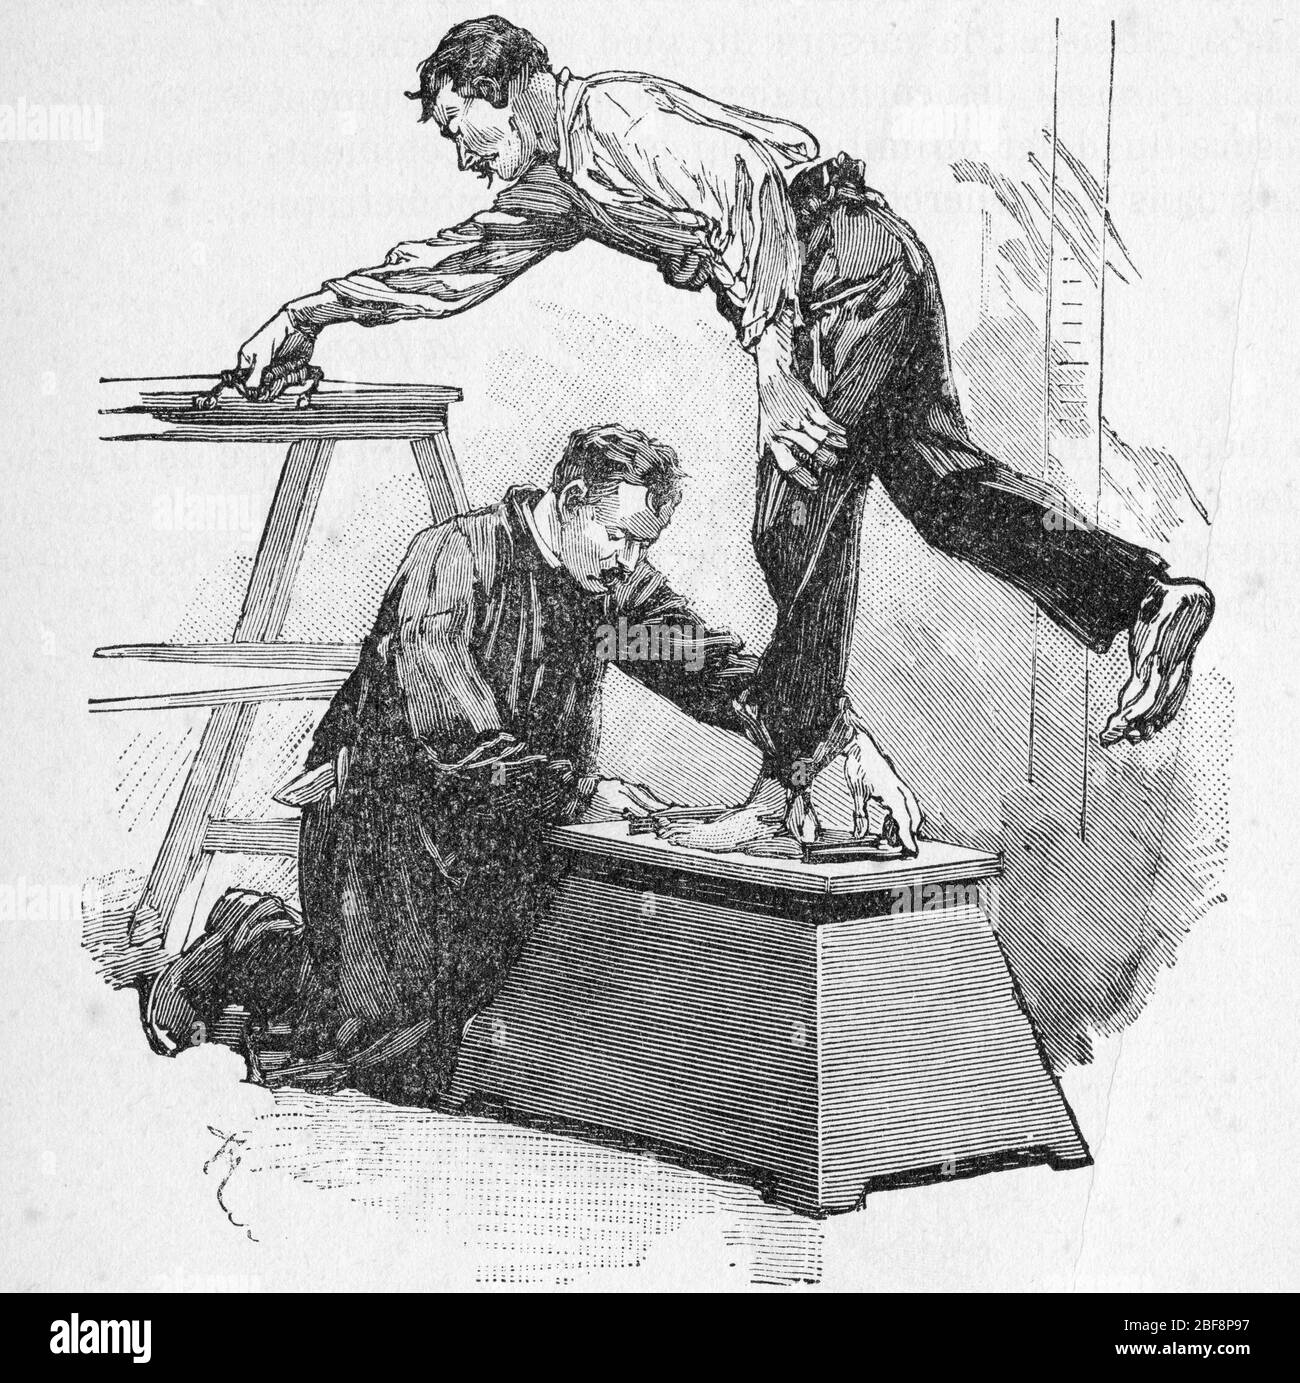 Bertillonage (systeme Bertillon ou anthropometrie judiciaire) technique criminalistique mise au point par le Francais Alphonse Bertillon (1853-1914) e Stock Photo